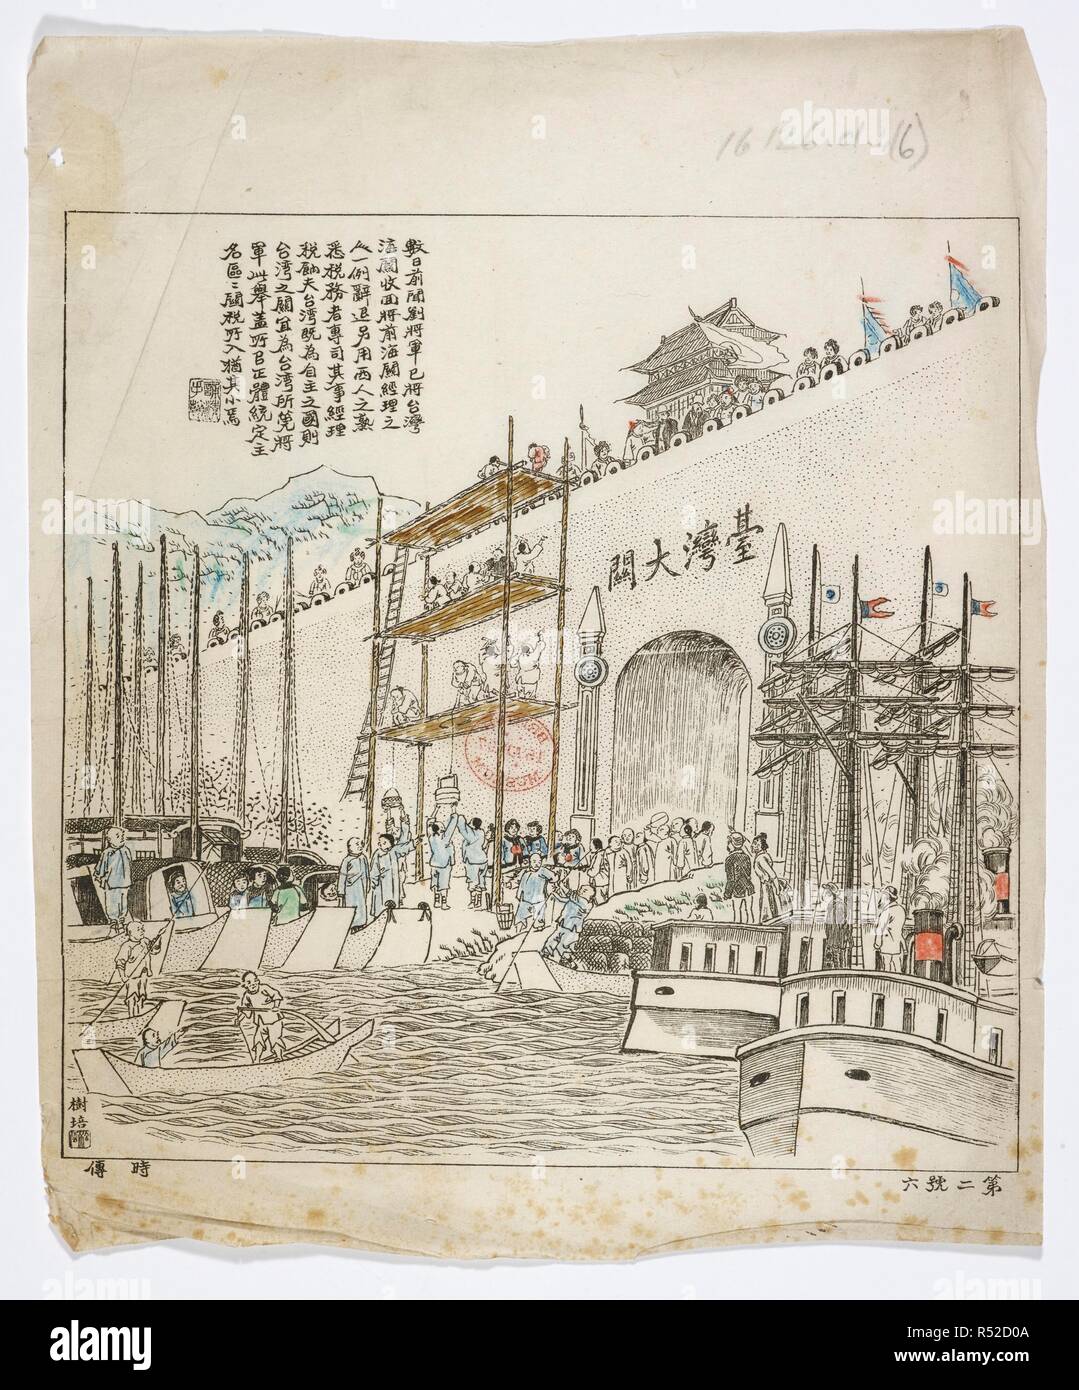 Il y a quelques jours, l'armée du général Liu repris Taiwan's poste de douane . Shu ri qian jiang wen Liu Jun yi jiang Wan hai shou guang huiâ… (shi chuan). 1894. Source : 16126.d.4 (6). Langue : chinois. Auteur : Shupei, Zhang. Banque D'Images